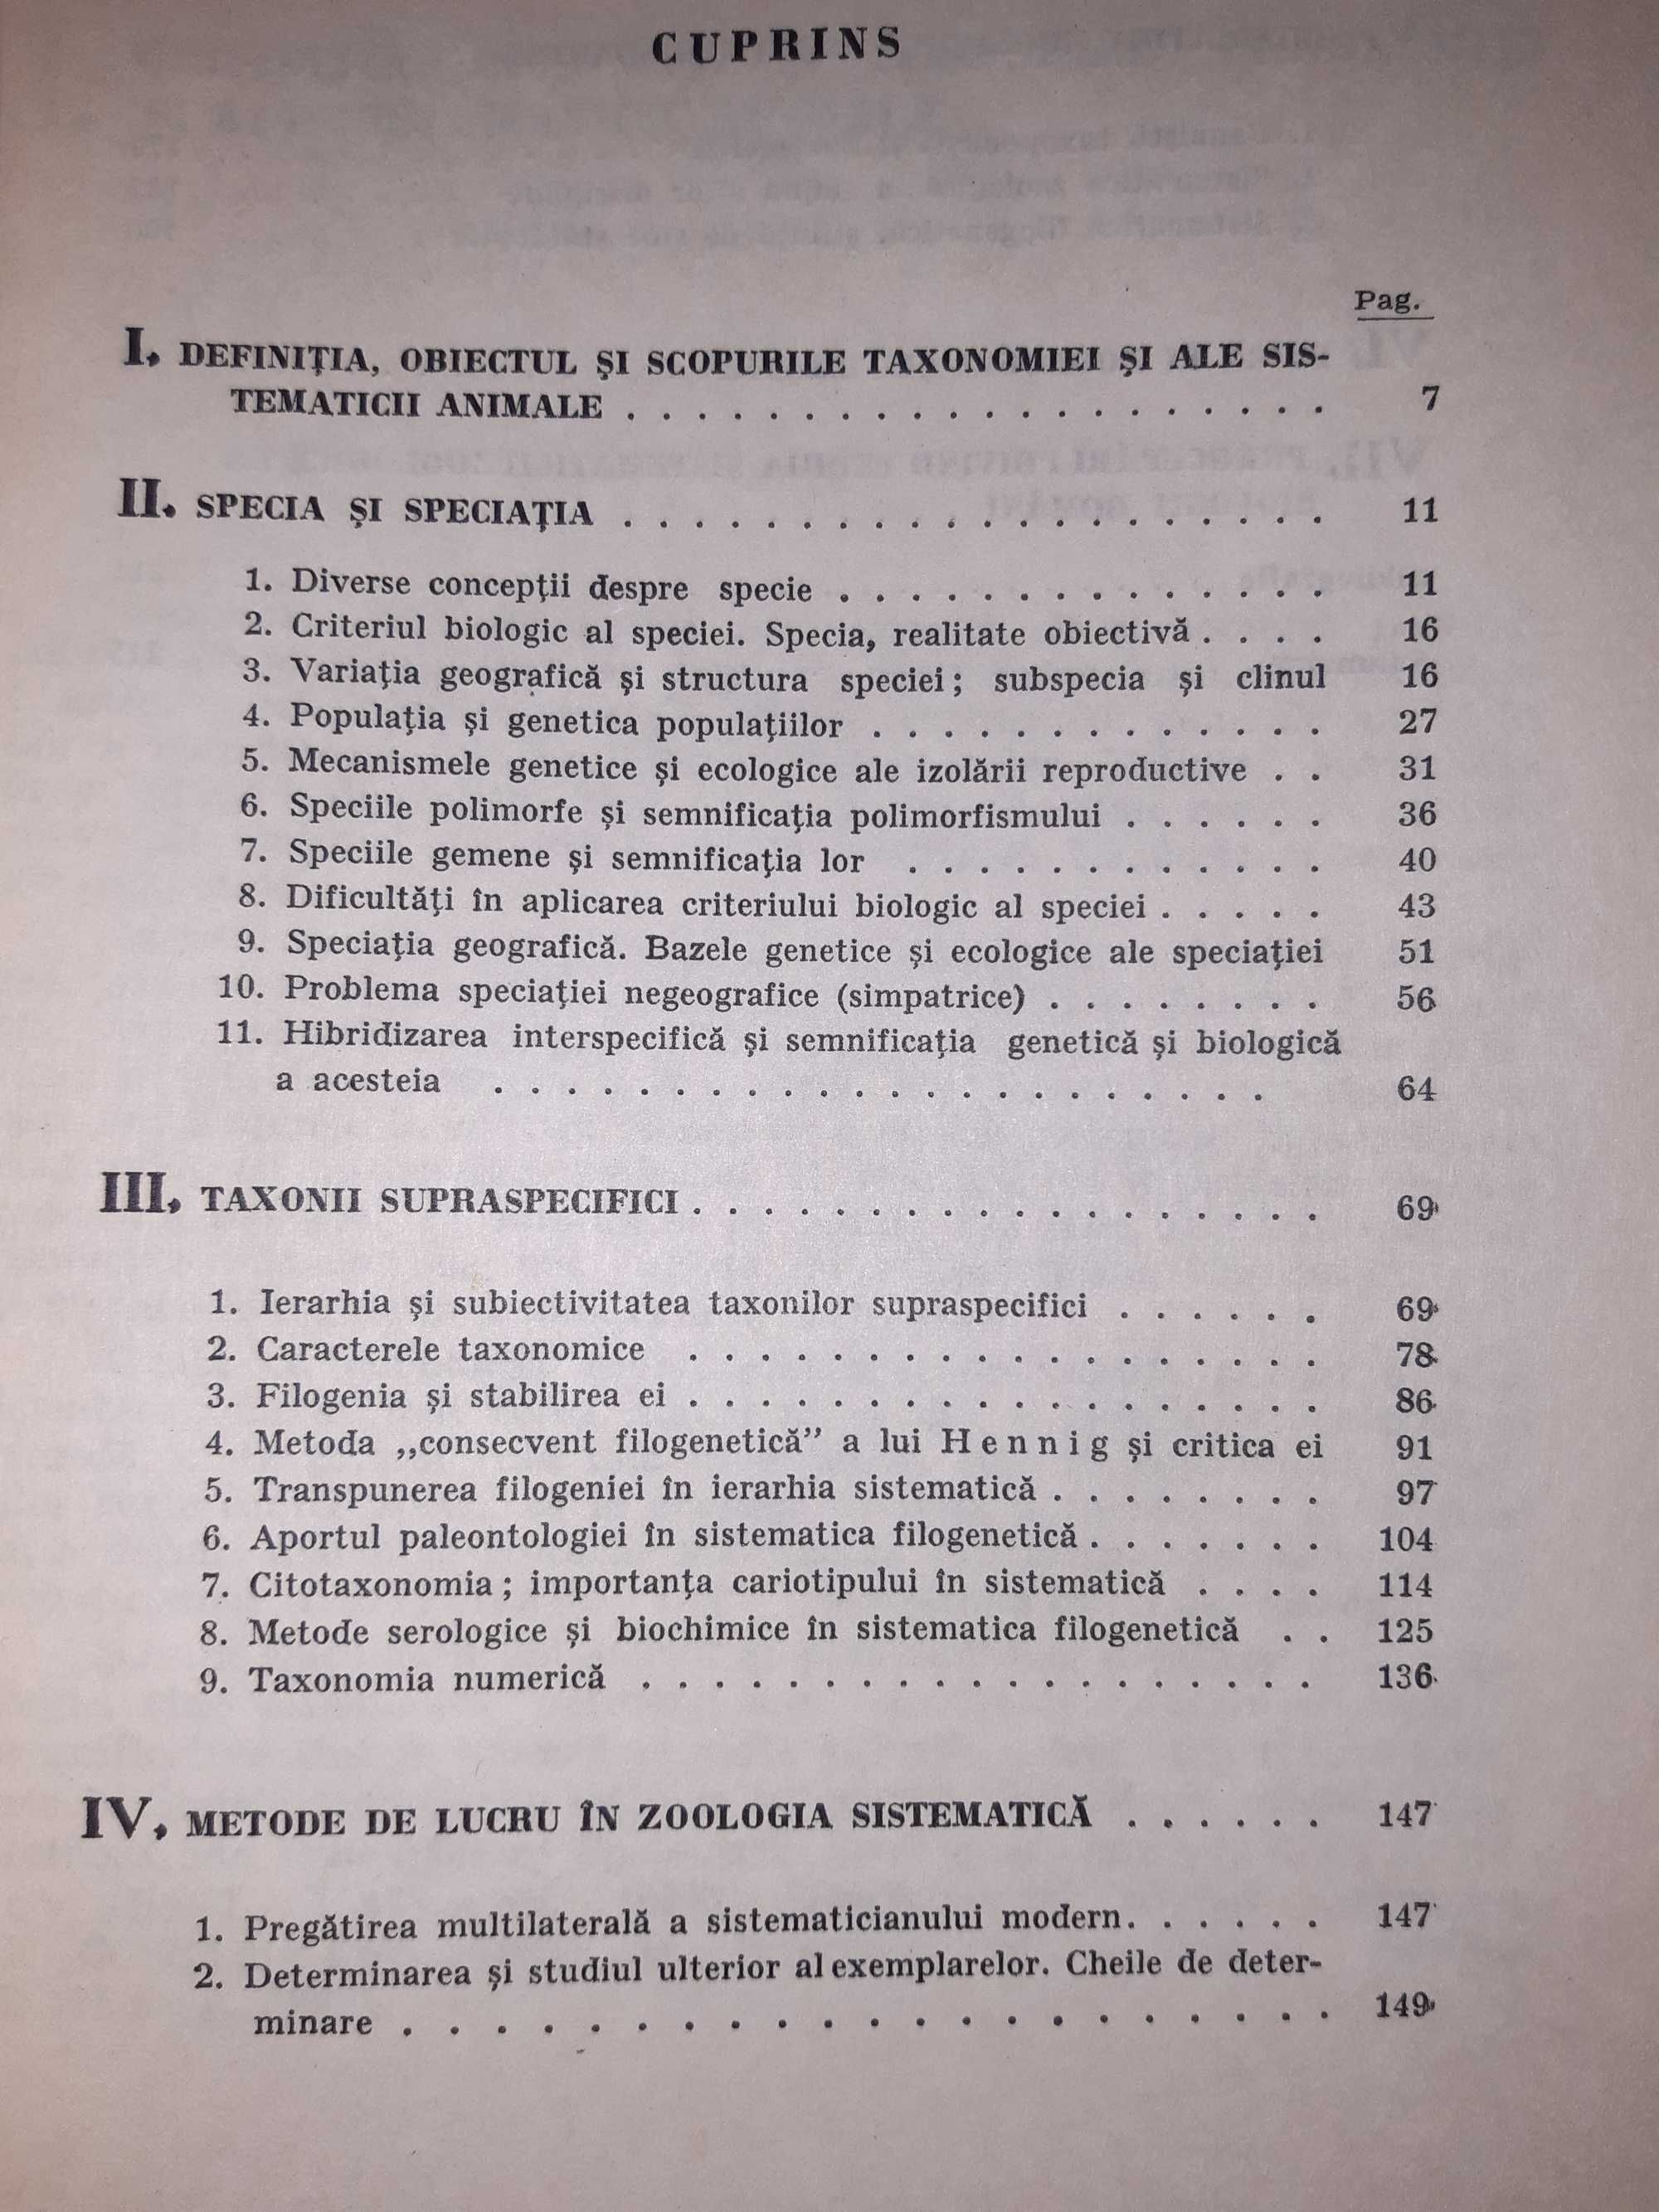 Principiile și metodele zoologiei sistematice,  Petru Banarescu